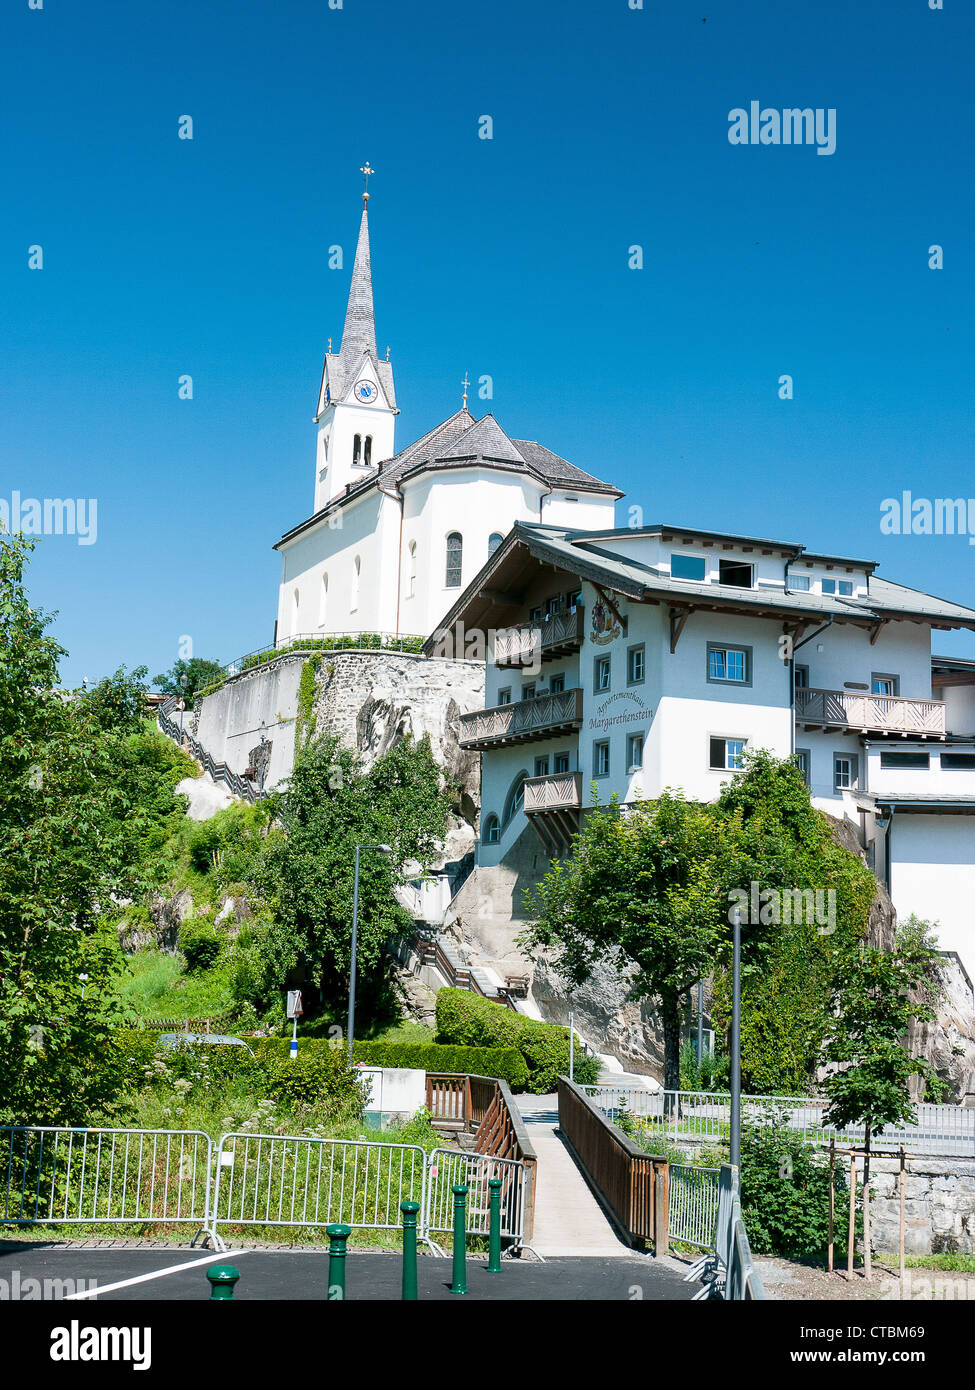 Traditionelle Kirche im Tiroler Dorf von Kaprun am Fuße des Berges Kitzsteinhorn in Österreich Stockfoto